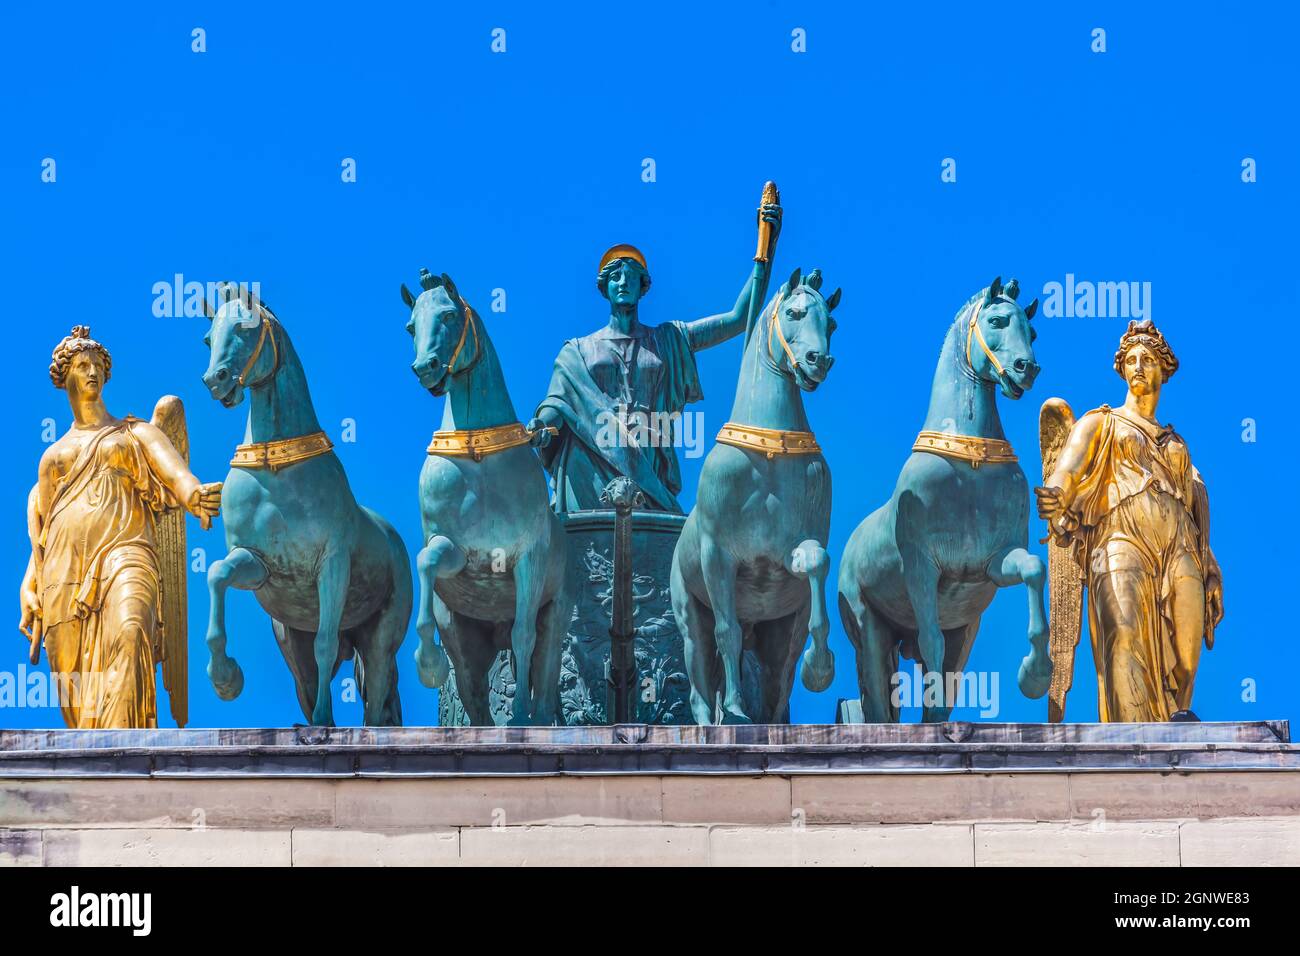 Horses Chariot Statues Arc de Triomphe du Carrousel Place du Louvre Paris France. Built by Napoleon in 1808 to celebrate Victory at Austerlitz, Horses Stock Photo